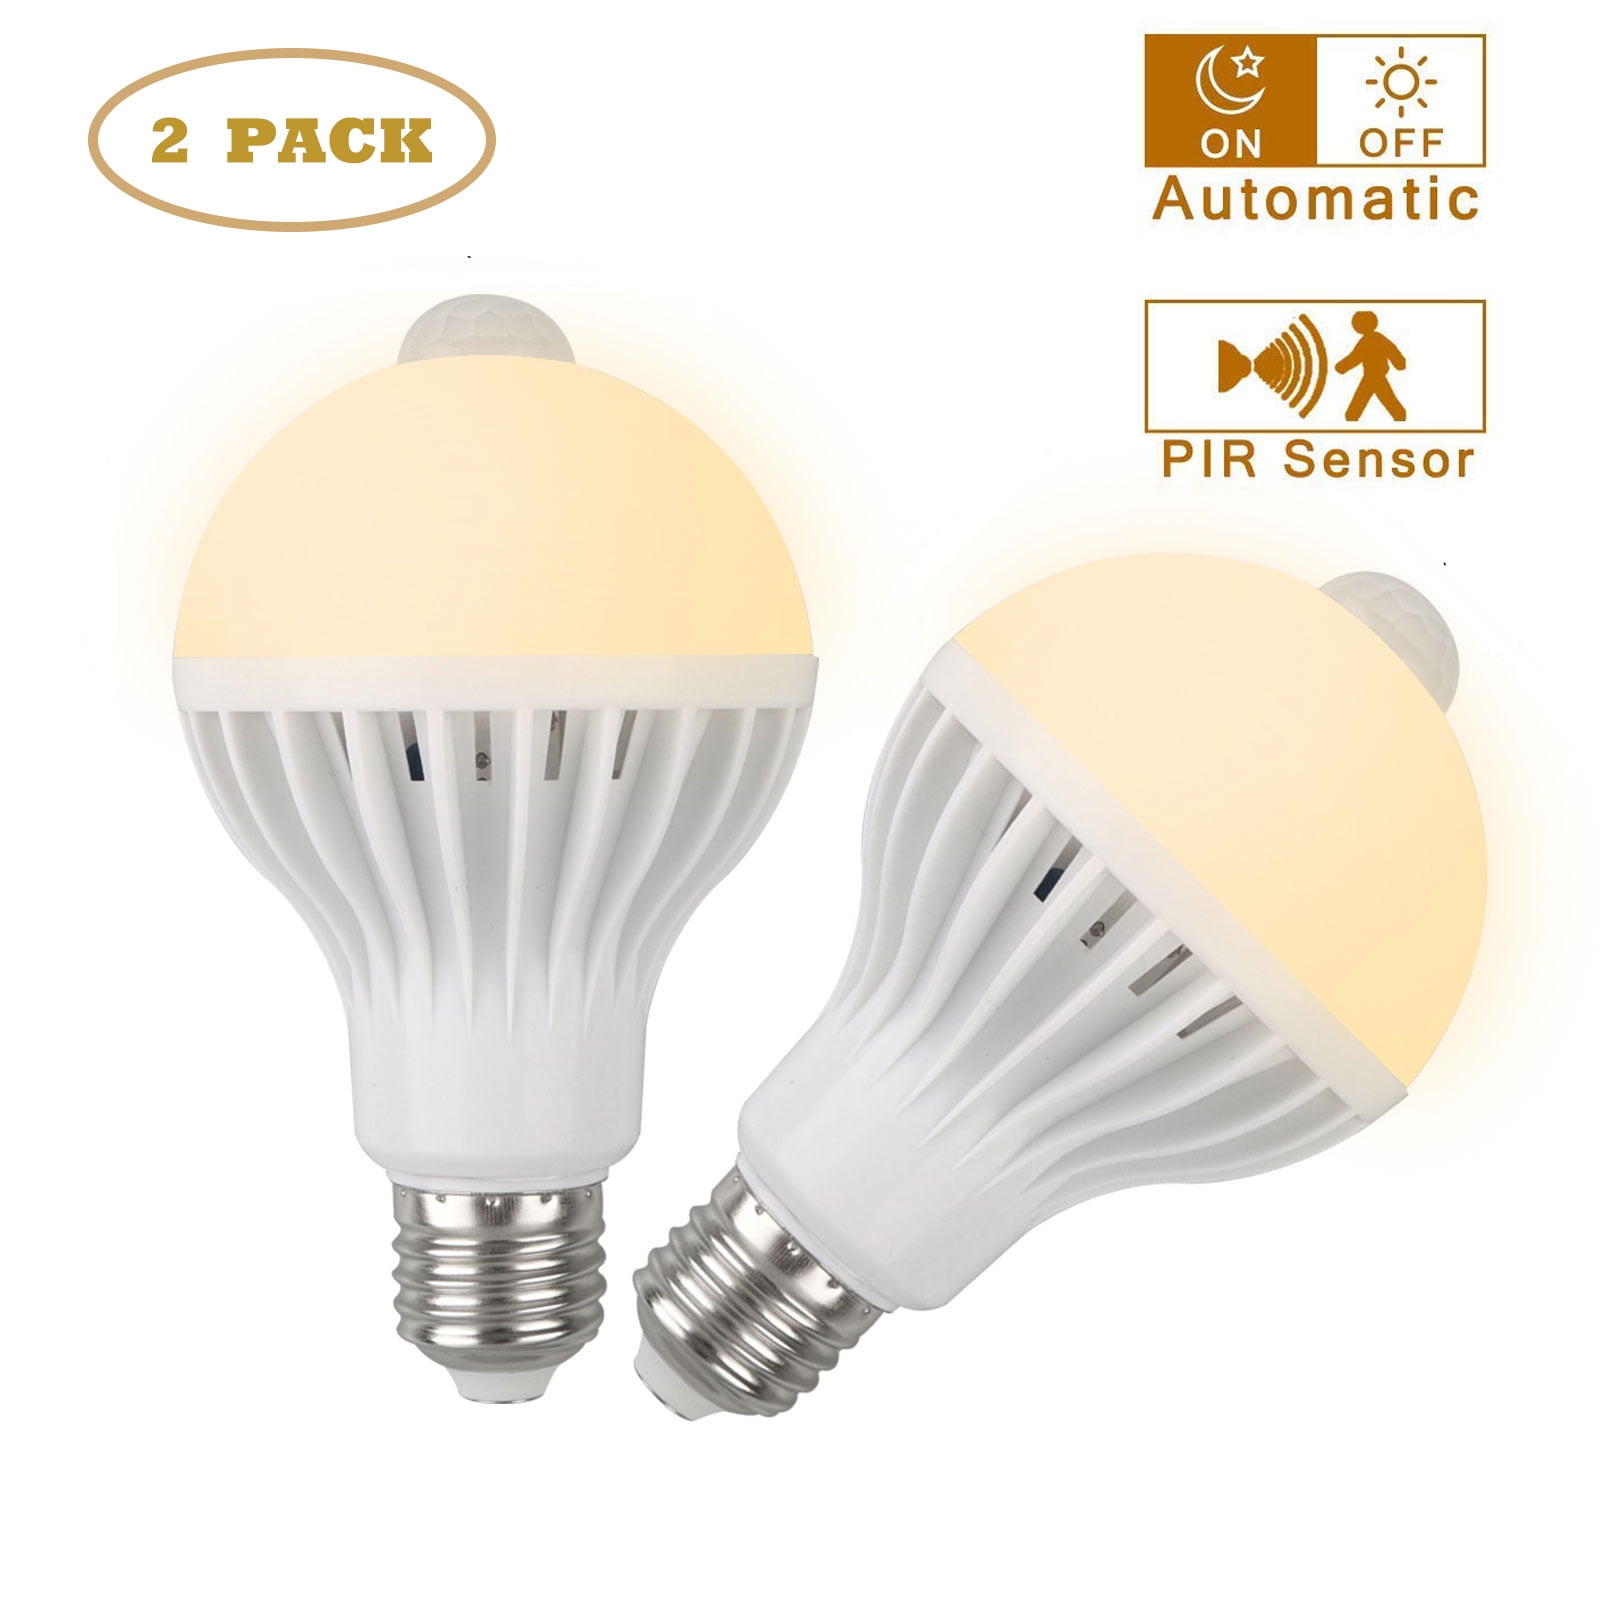 10 x 5W ES E27 Cool White LED Light Lamp Bulb 220V 450 Lumens Job Lot 